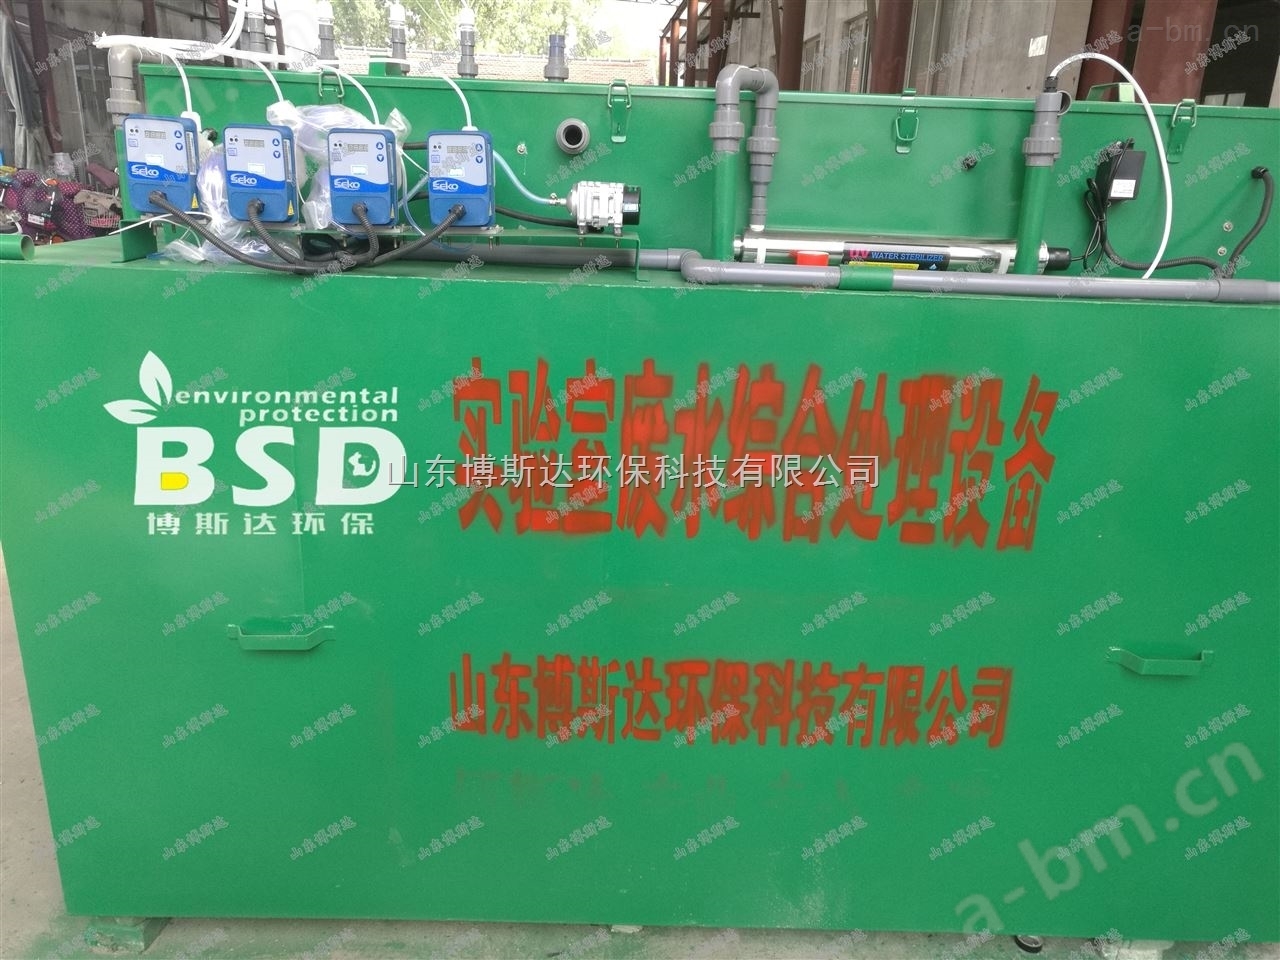 滁州化工学院实验室废水综合处理装置新闻现场